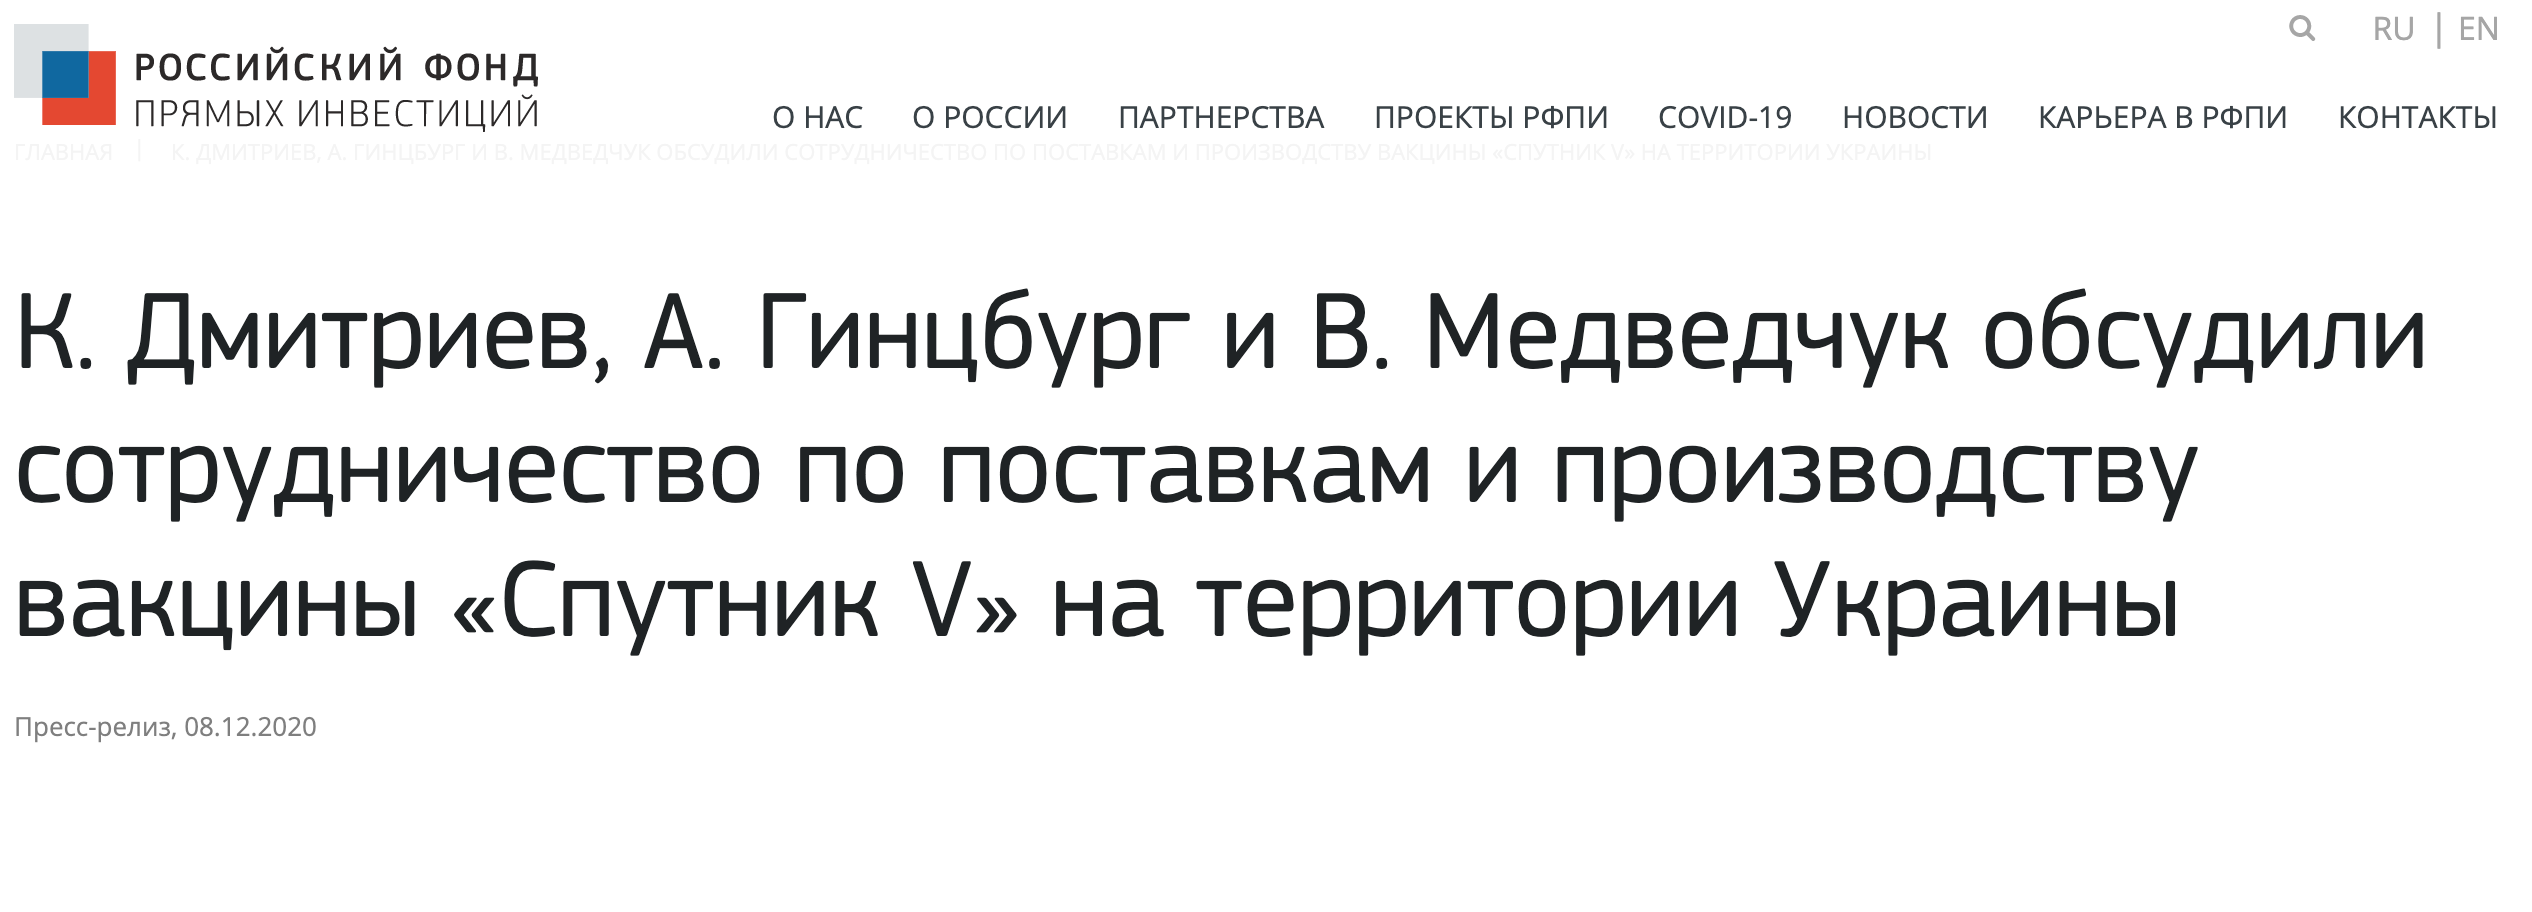 В РФ выдали фейк о производстве российской вакцины в Украине. Не обошлось без Медведчука